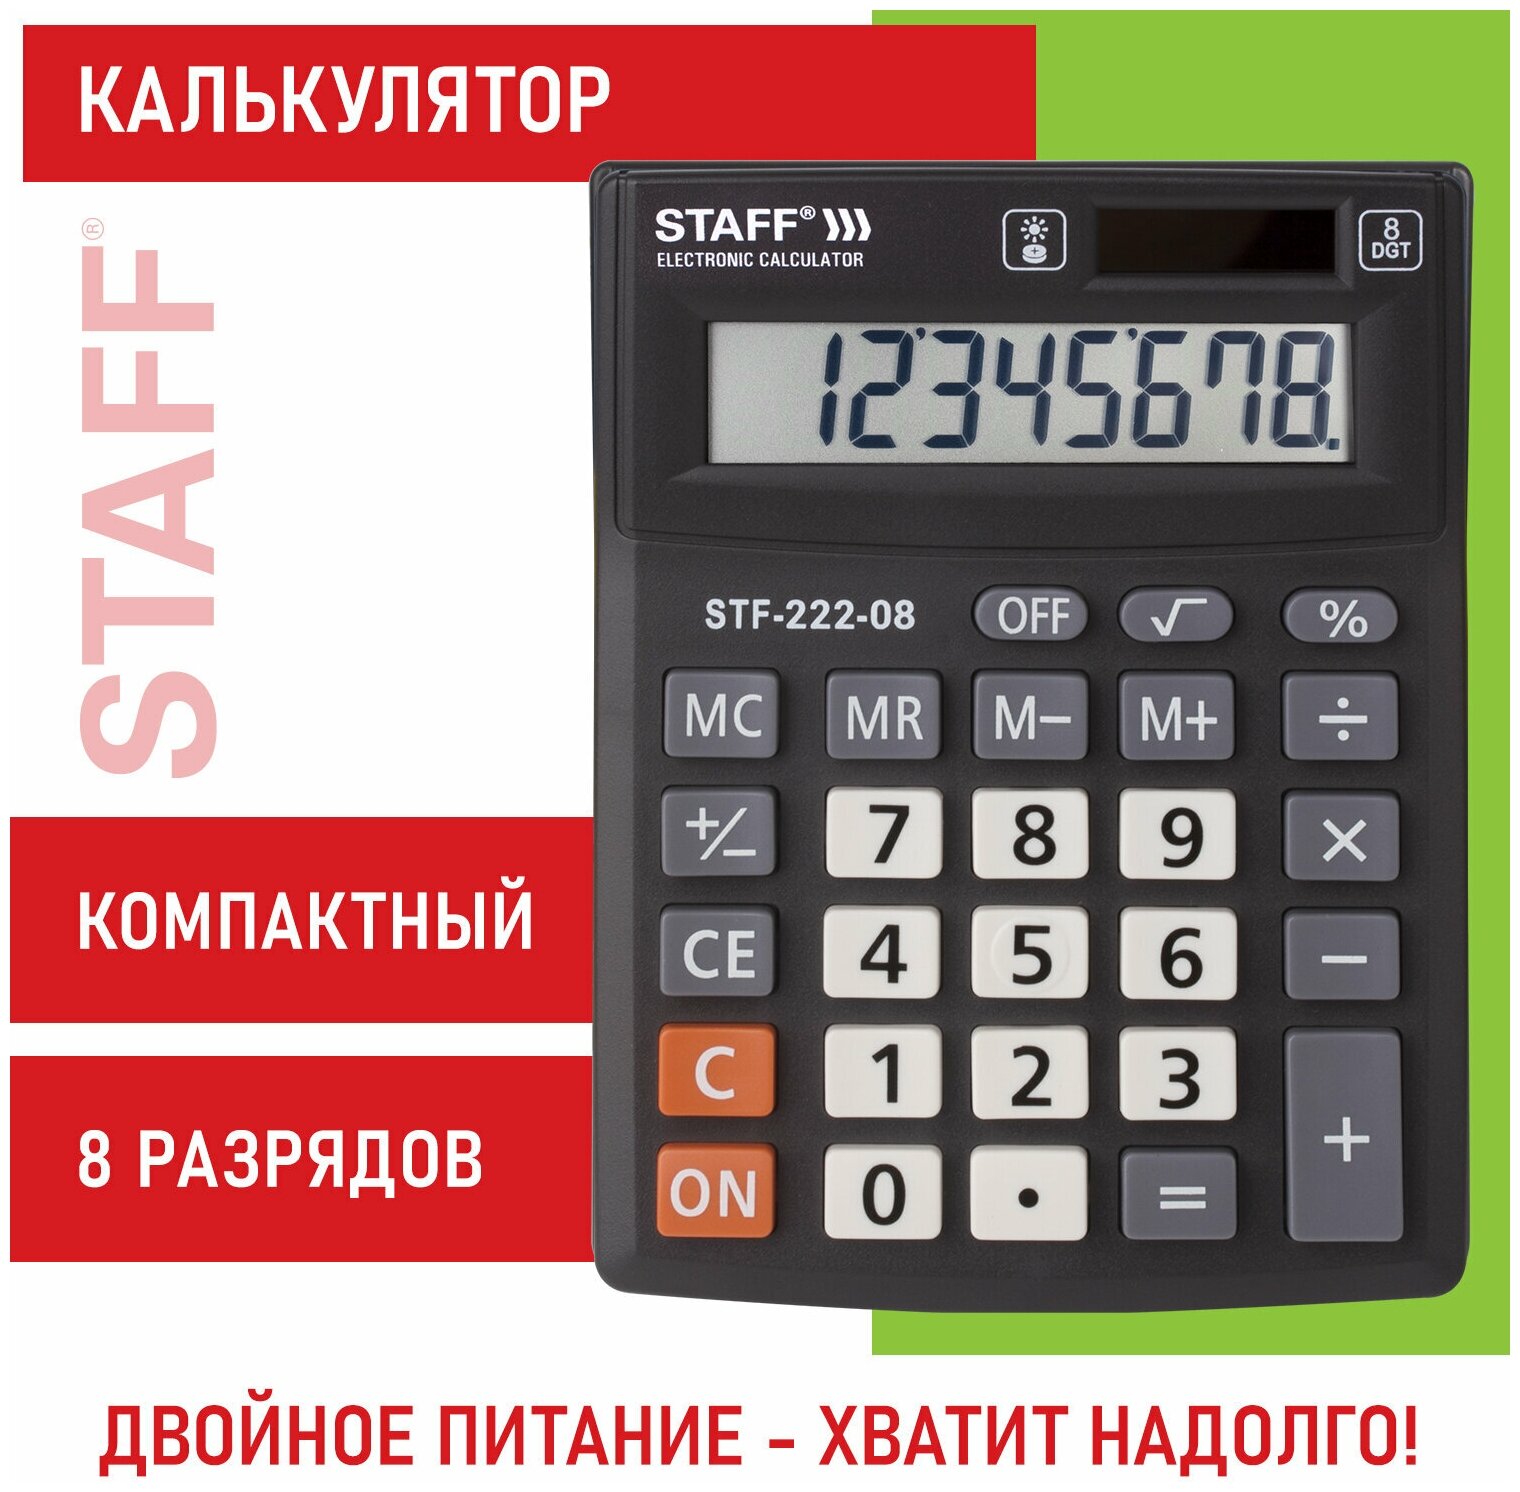 Калькулятор карманный STAFF STF-222-08